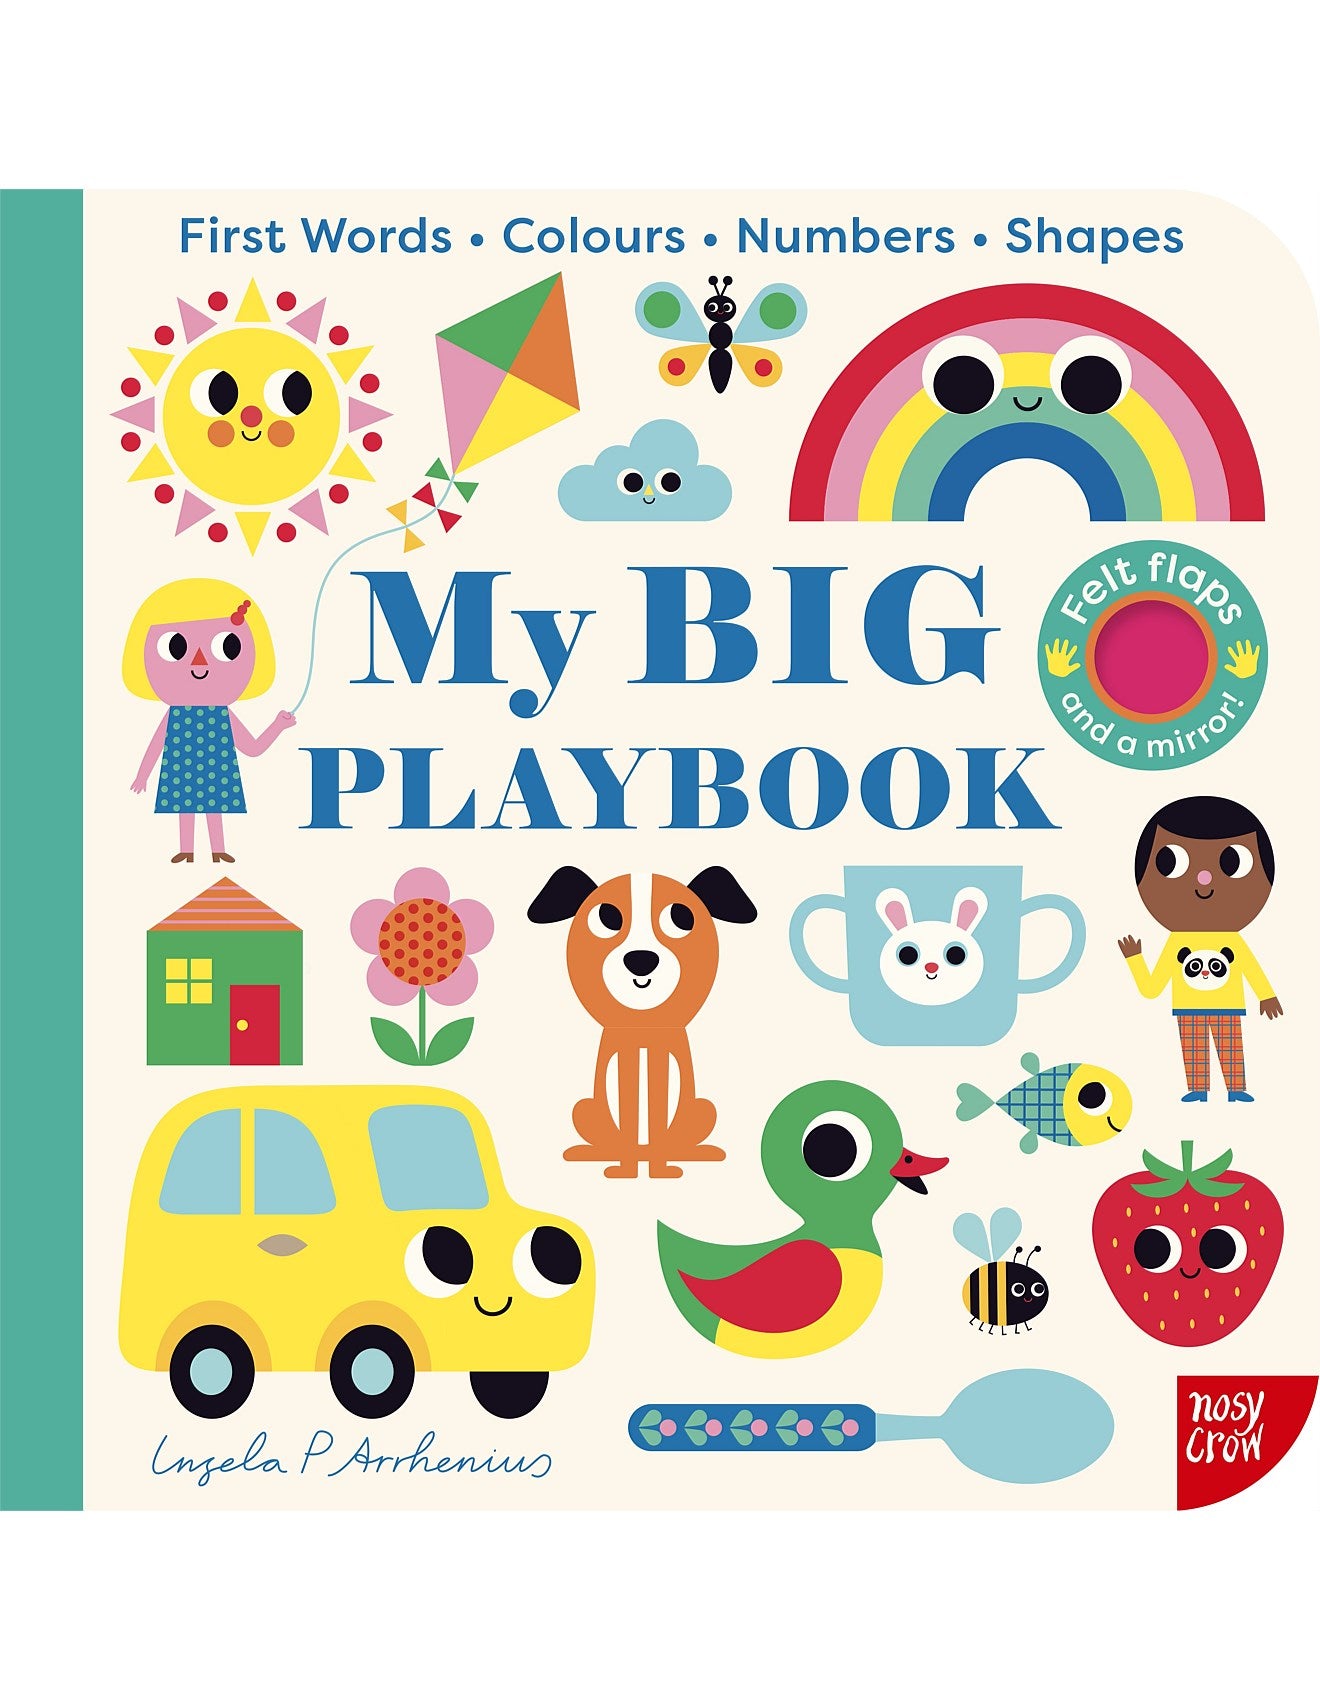 My Big Playbook by Ingela P Arrhenius